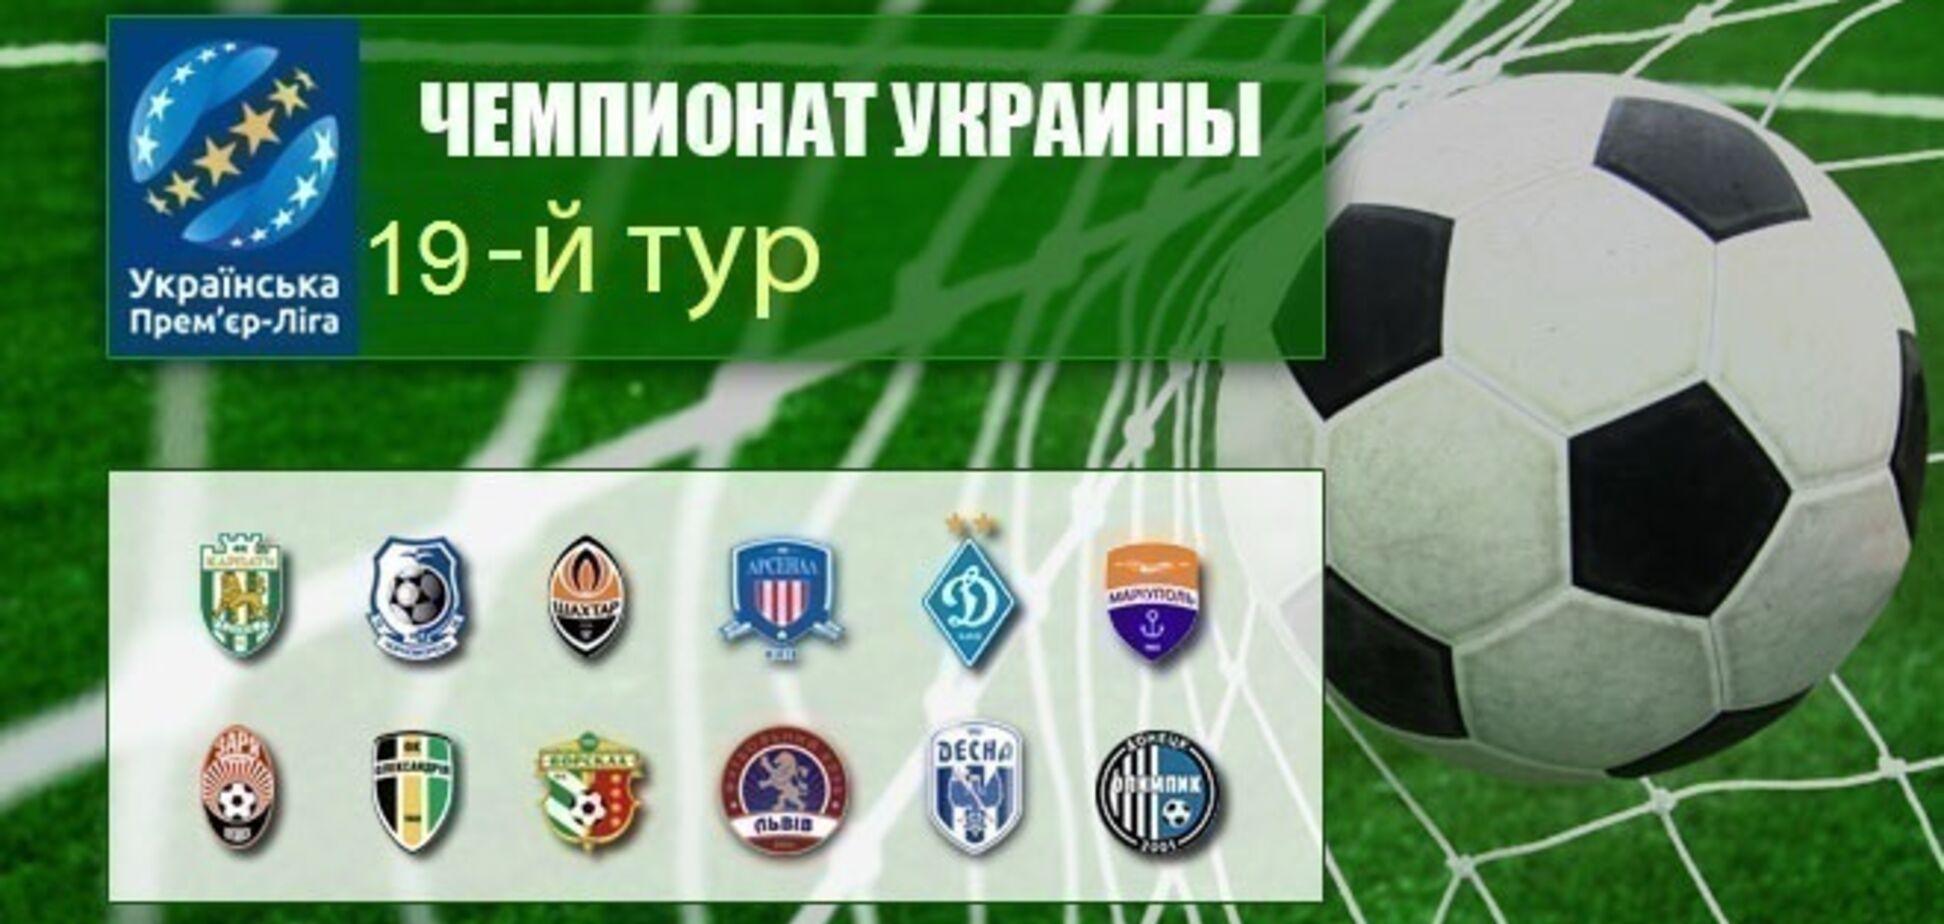 19-й тур чемпионата Украины по футболу: результаты, отчеты и таблица